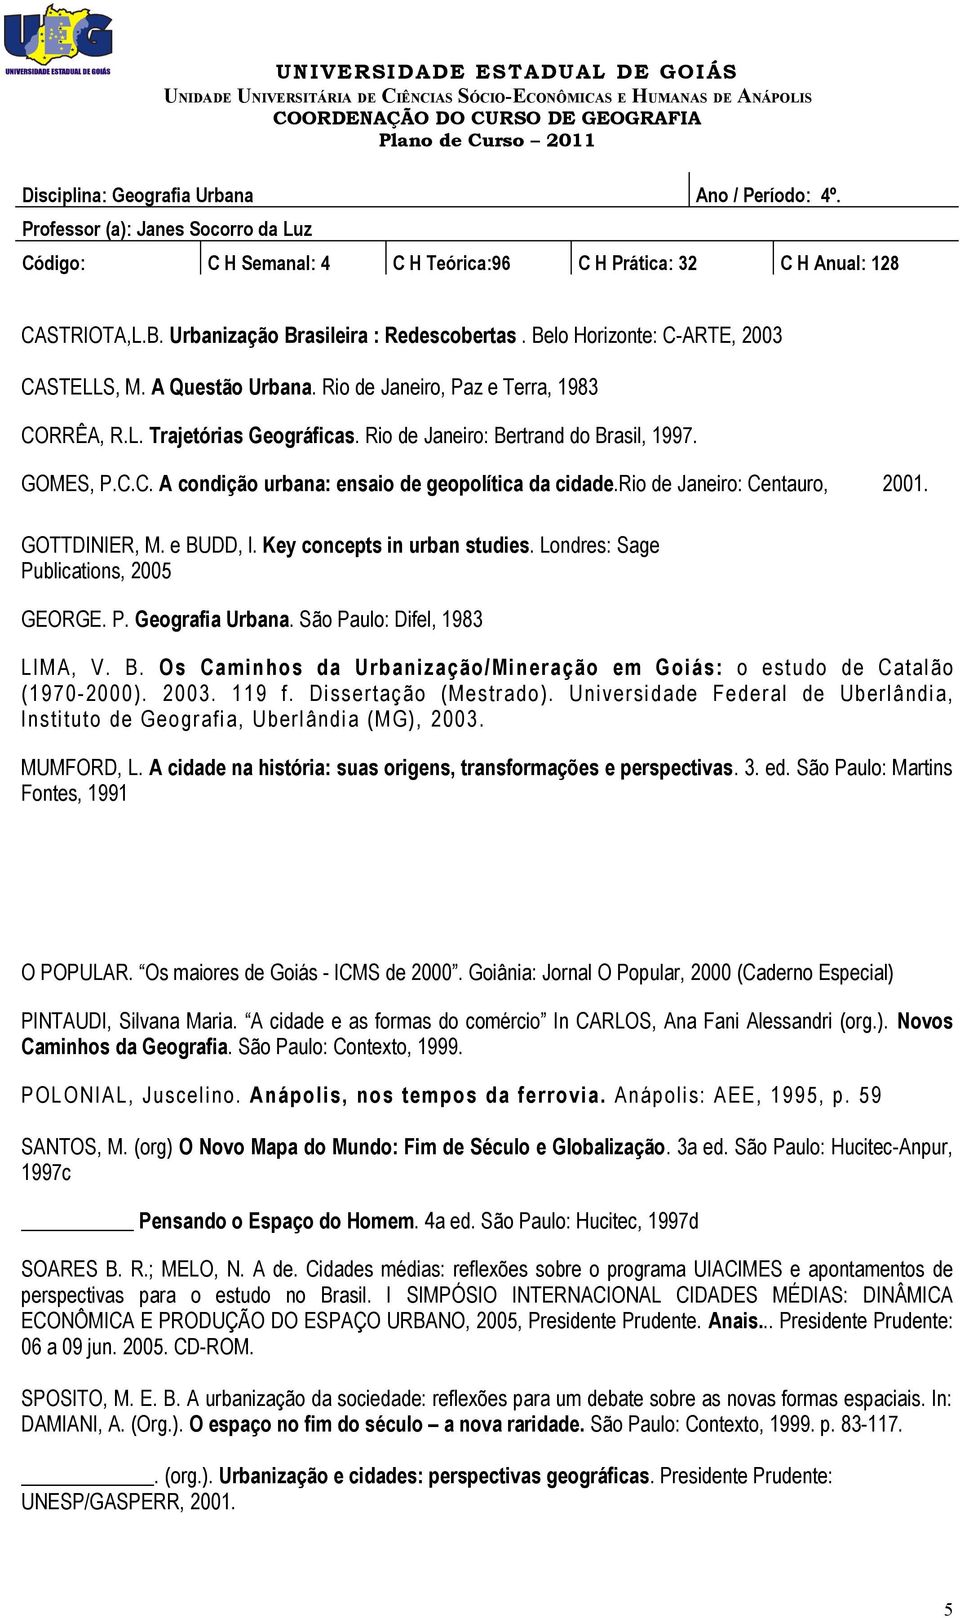 Londres: Sage Publications, 2005 GEORGE. P. Geografia Urbana. São Paulo: Difel, 1983 LIMA, V. B. Os Caminhos da Urbanização/Mineração em Goiás: o estudo de Catalão (1970-2000). 2003. 119 f.